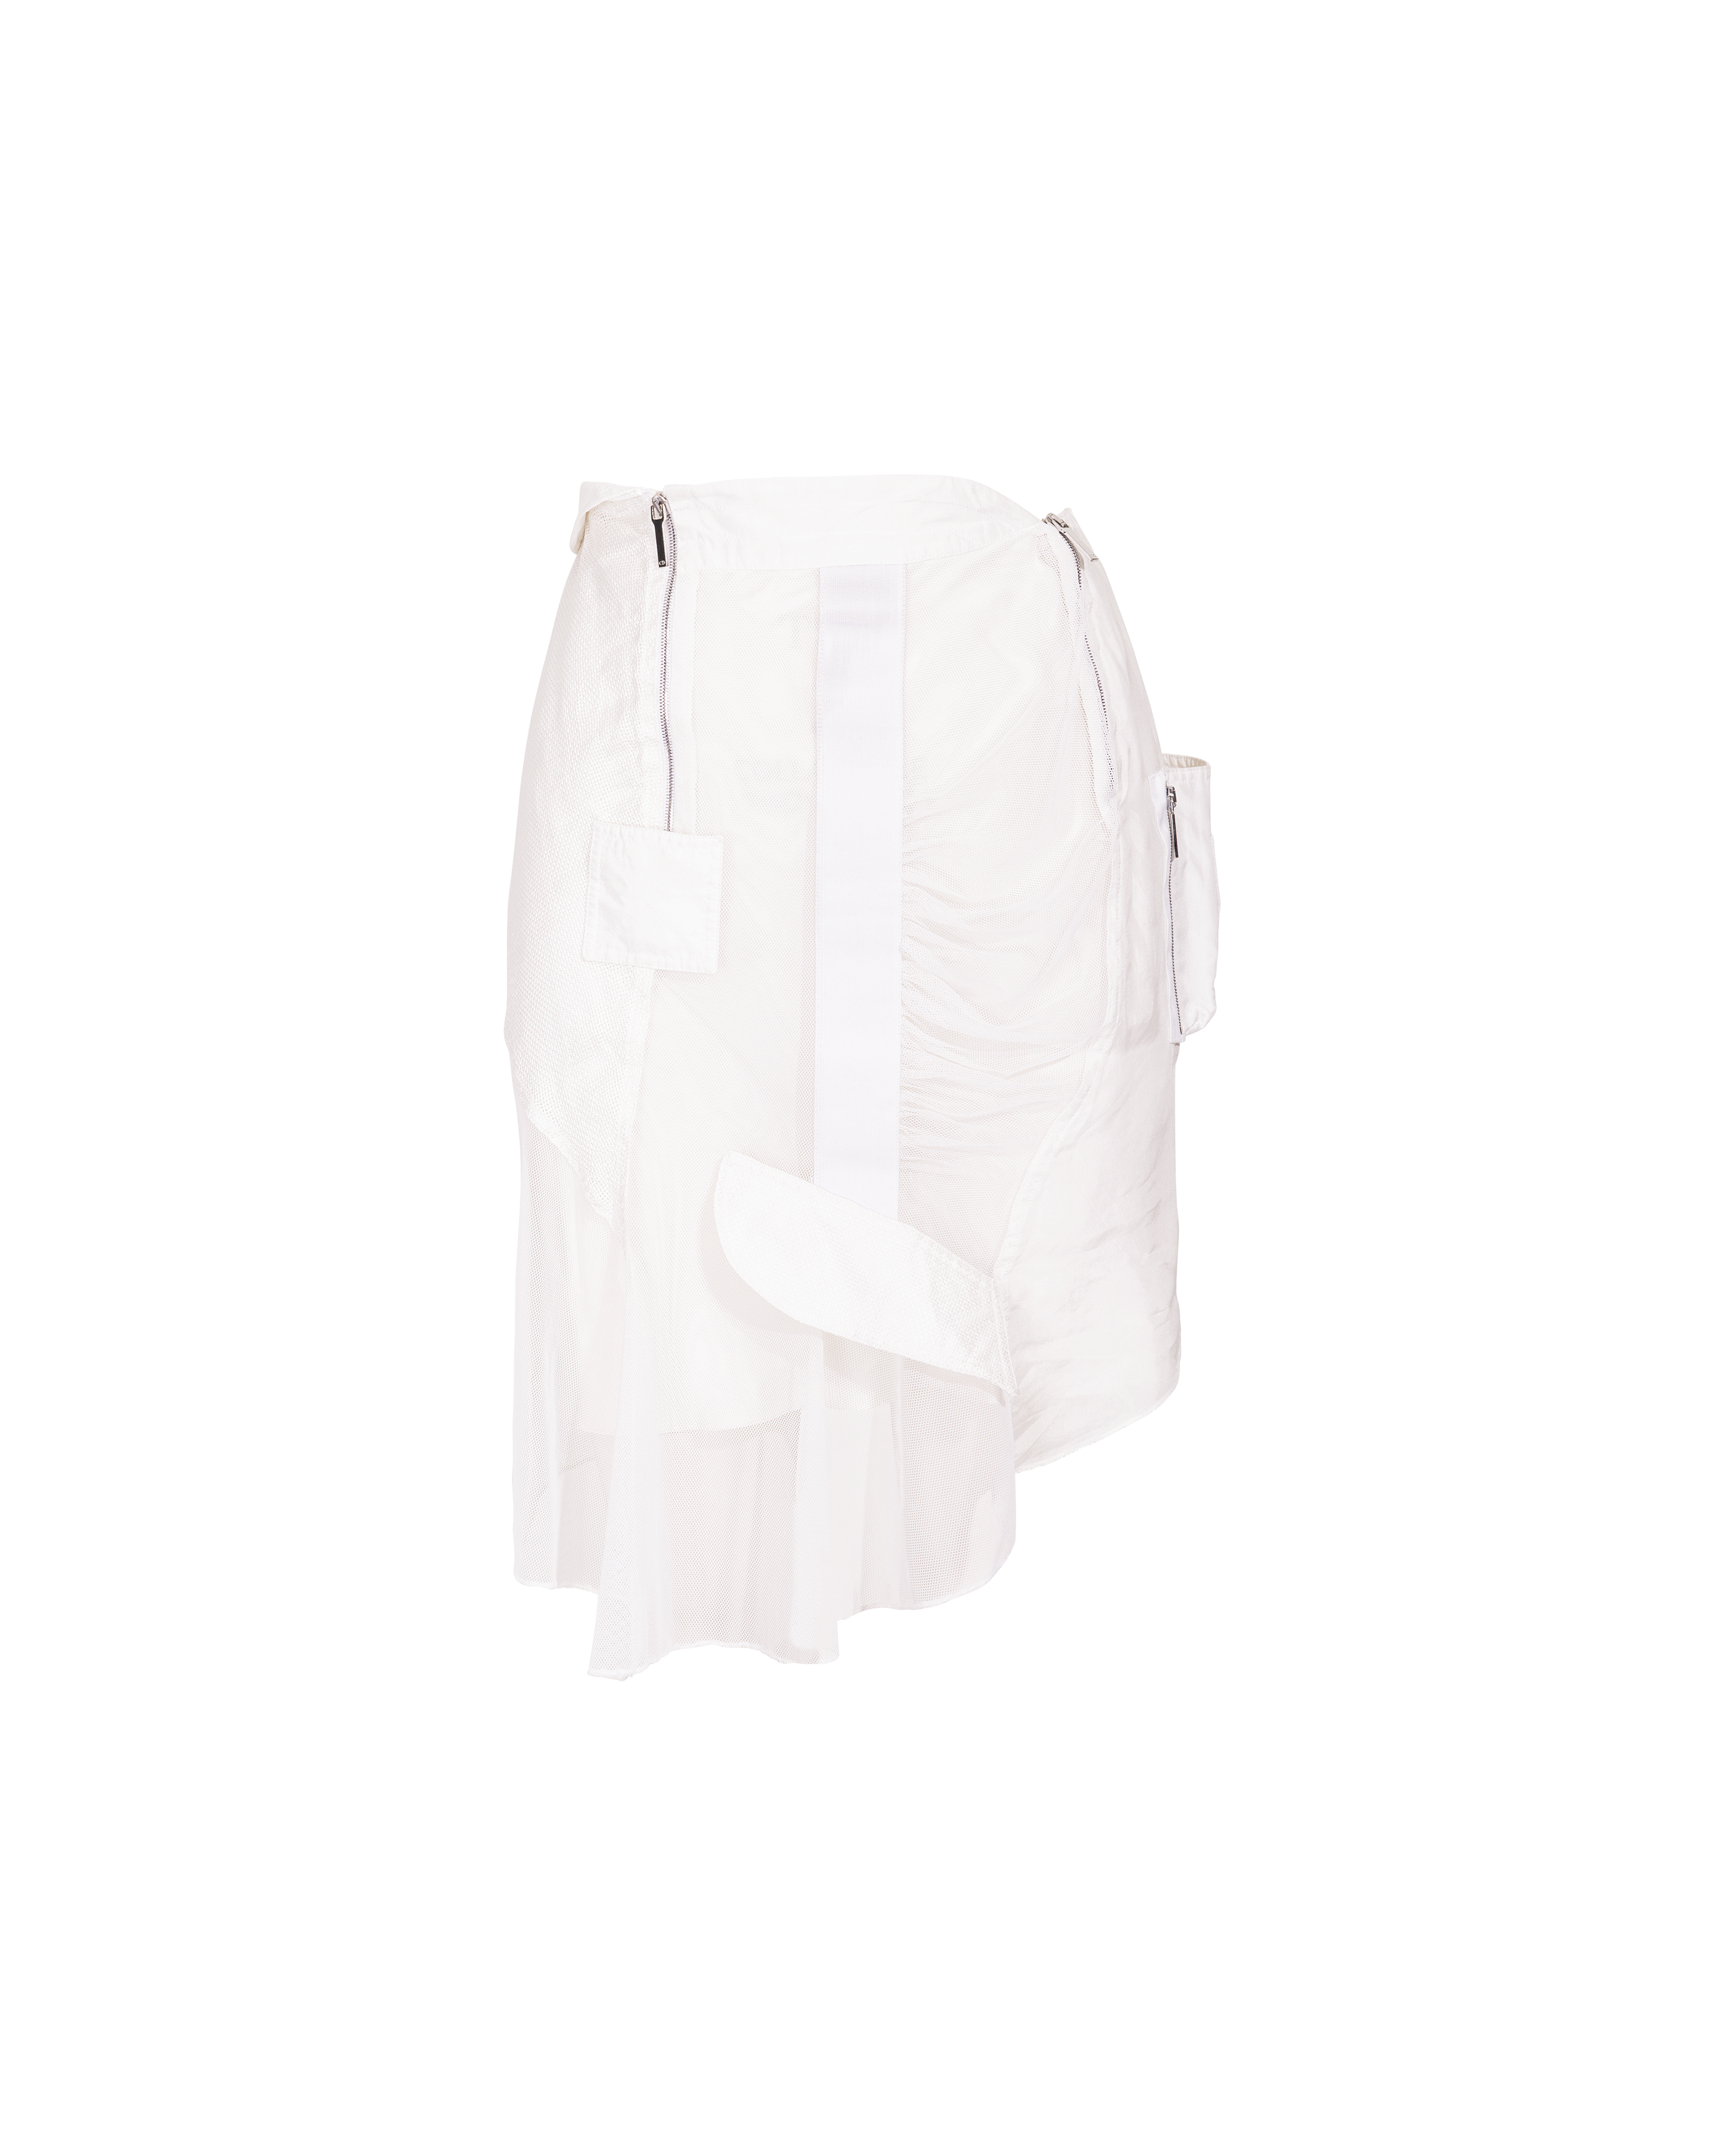 S/S 2002 White Asymmetrical Deconstructed Skirt